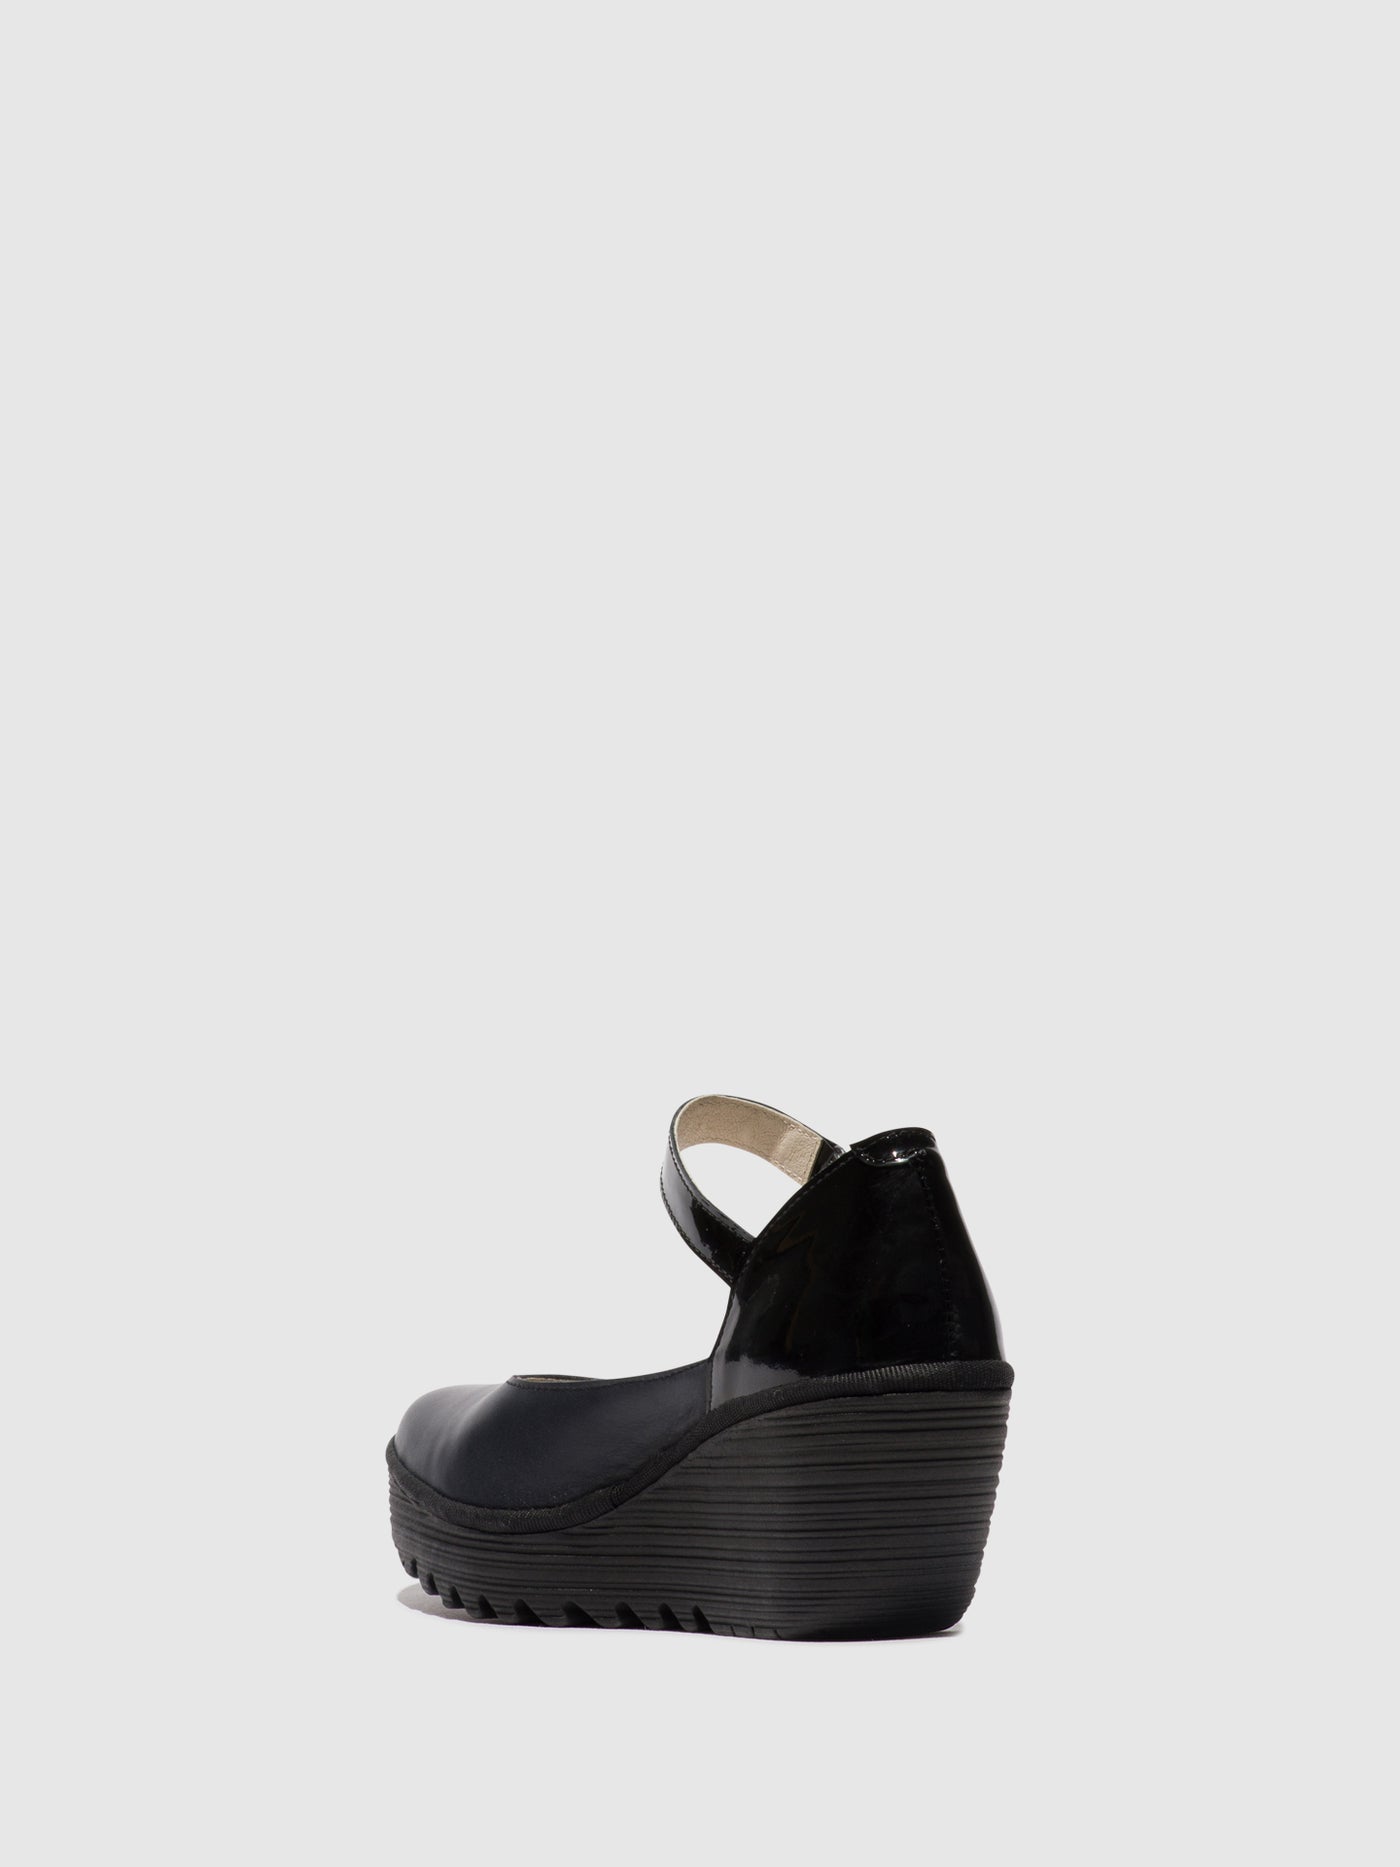 Mary Jane Shoes YAWO345FLY NAVY/BLACK